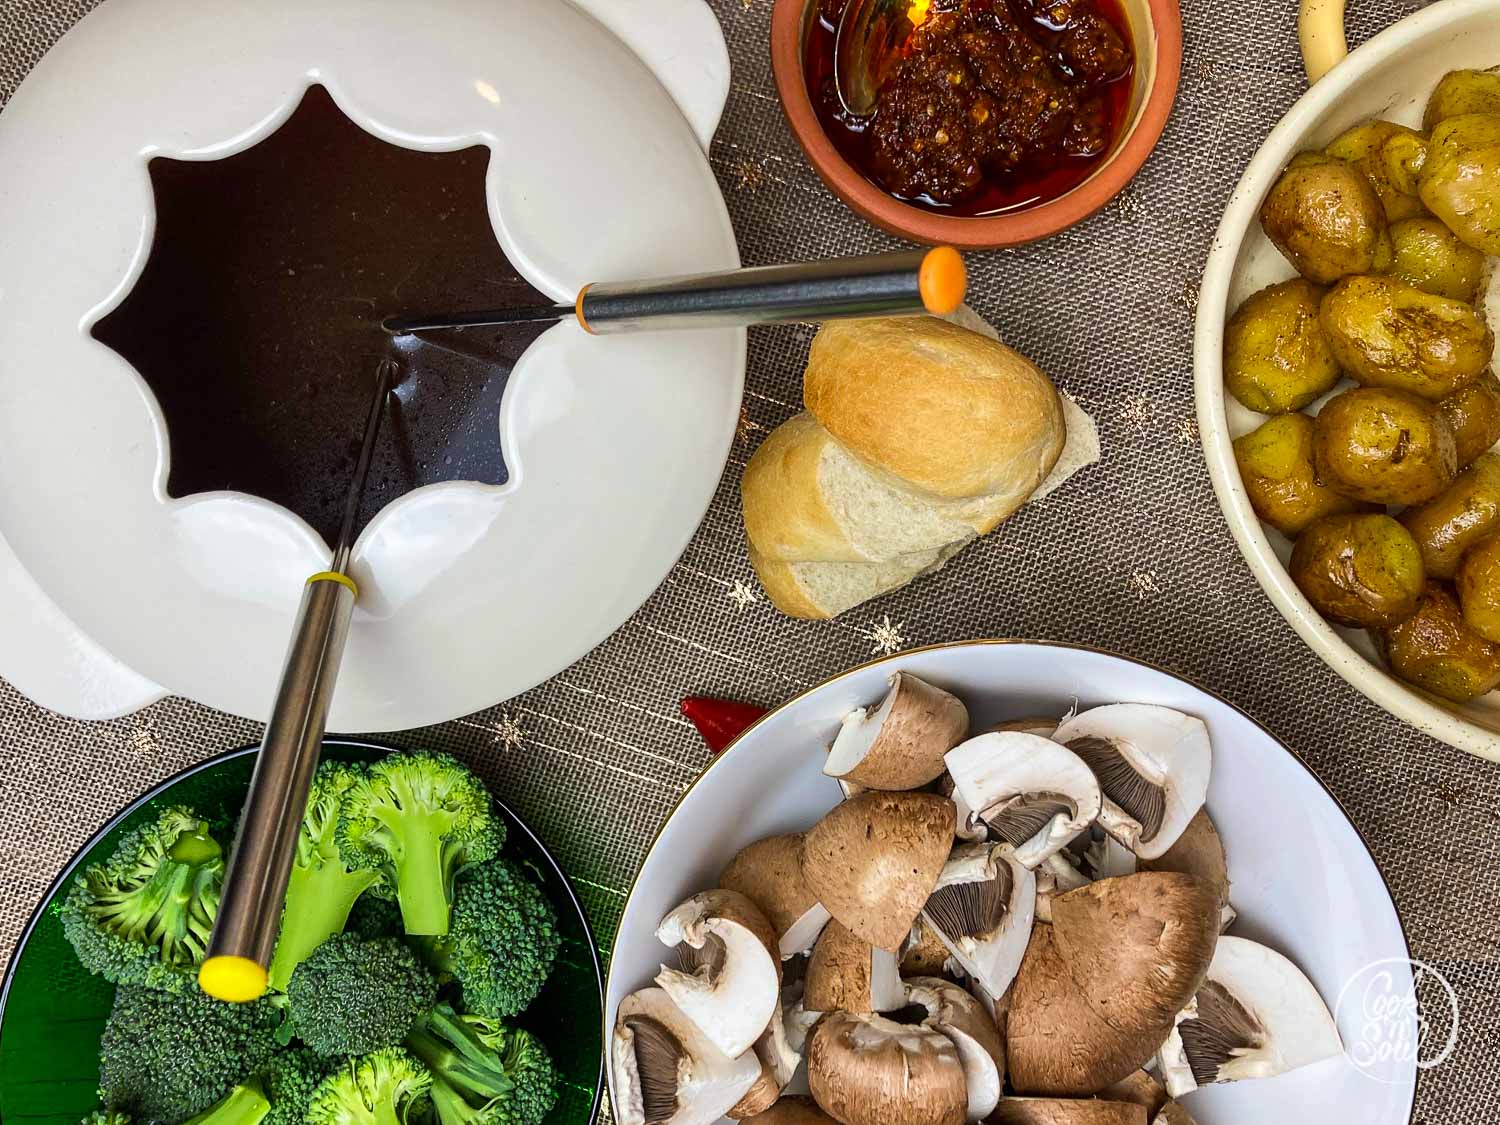 Die Top Auswahlmöglichkeiten - Suchen Sie bei uns die Einkaufsliste fondue entsprechend Ihrer Wünsche